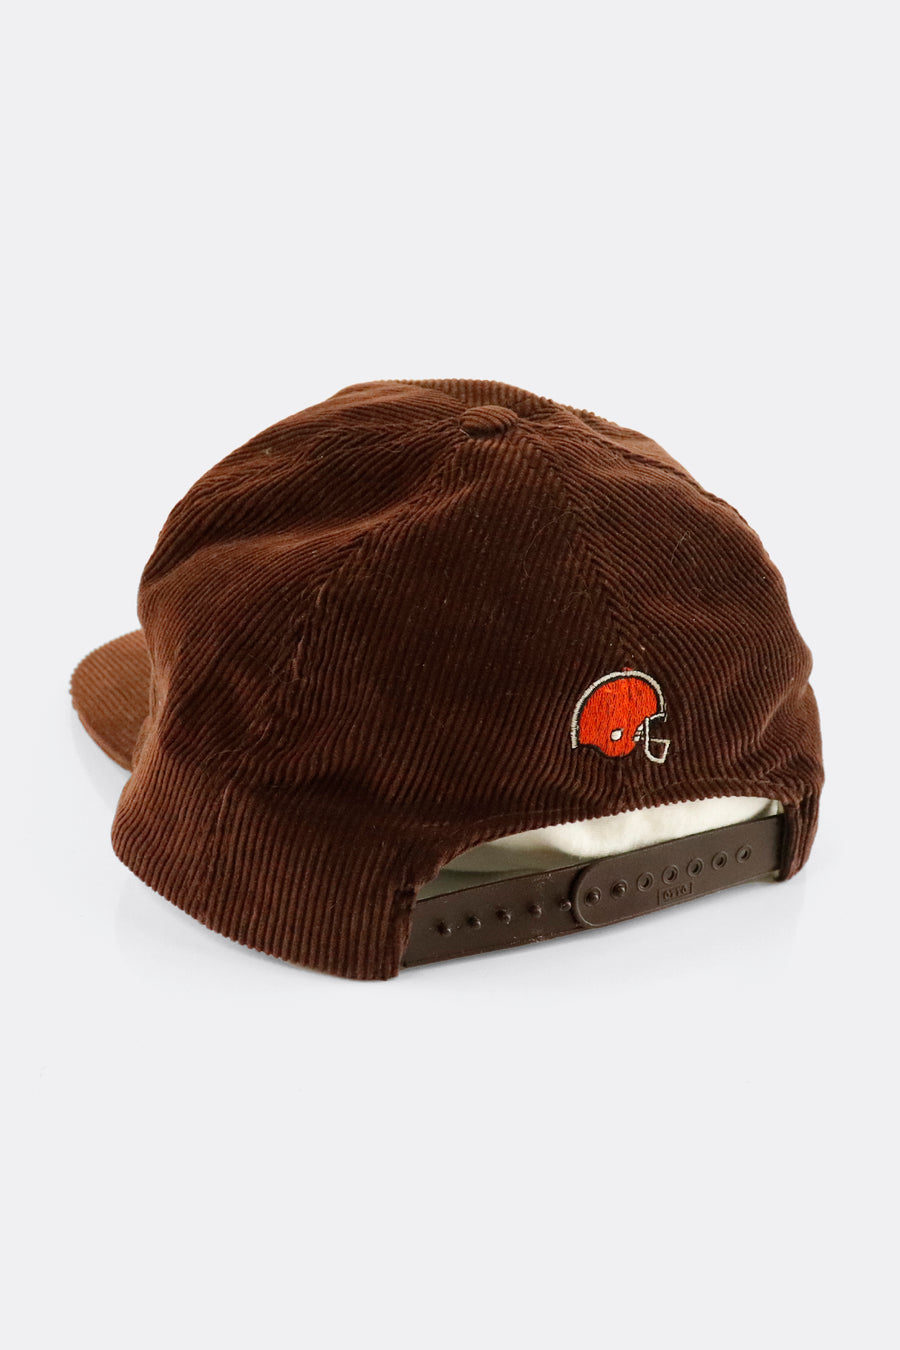 Vintage NFL Cleveland Browns Embroidered Corduroy Snapback Hat